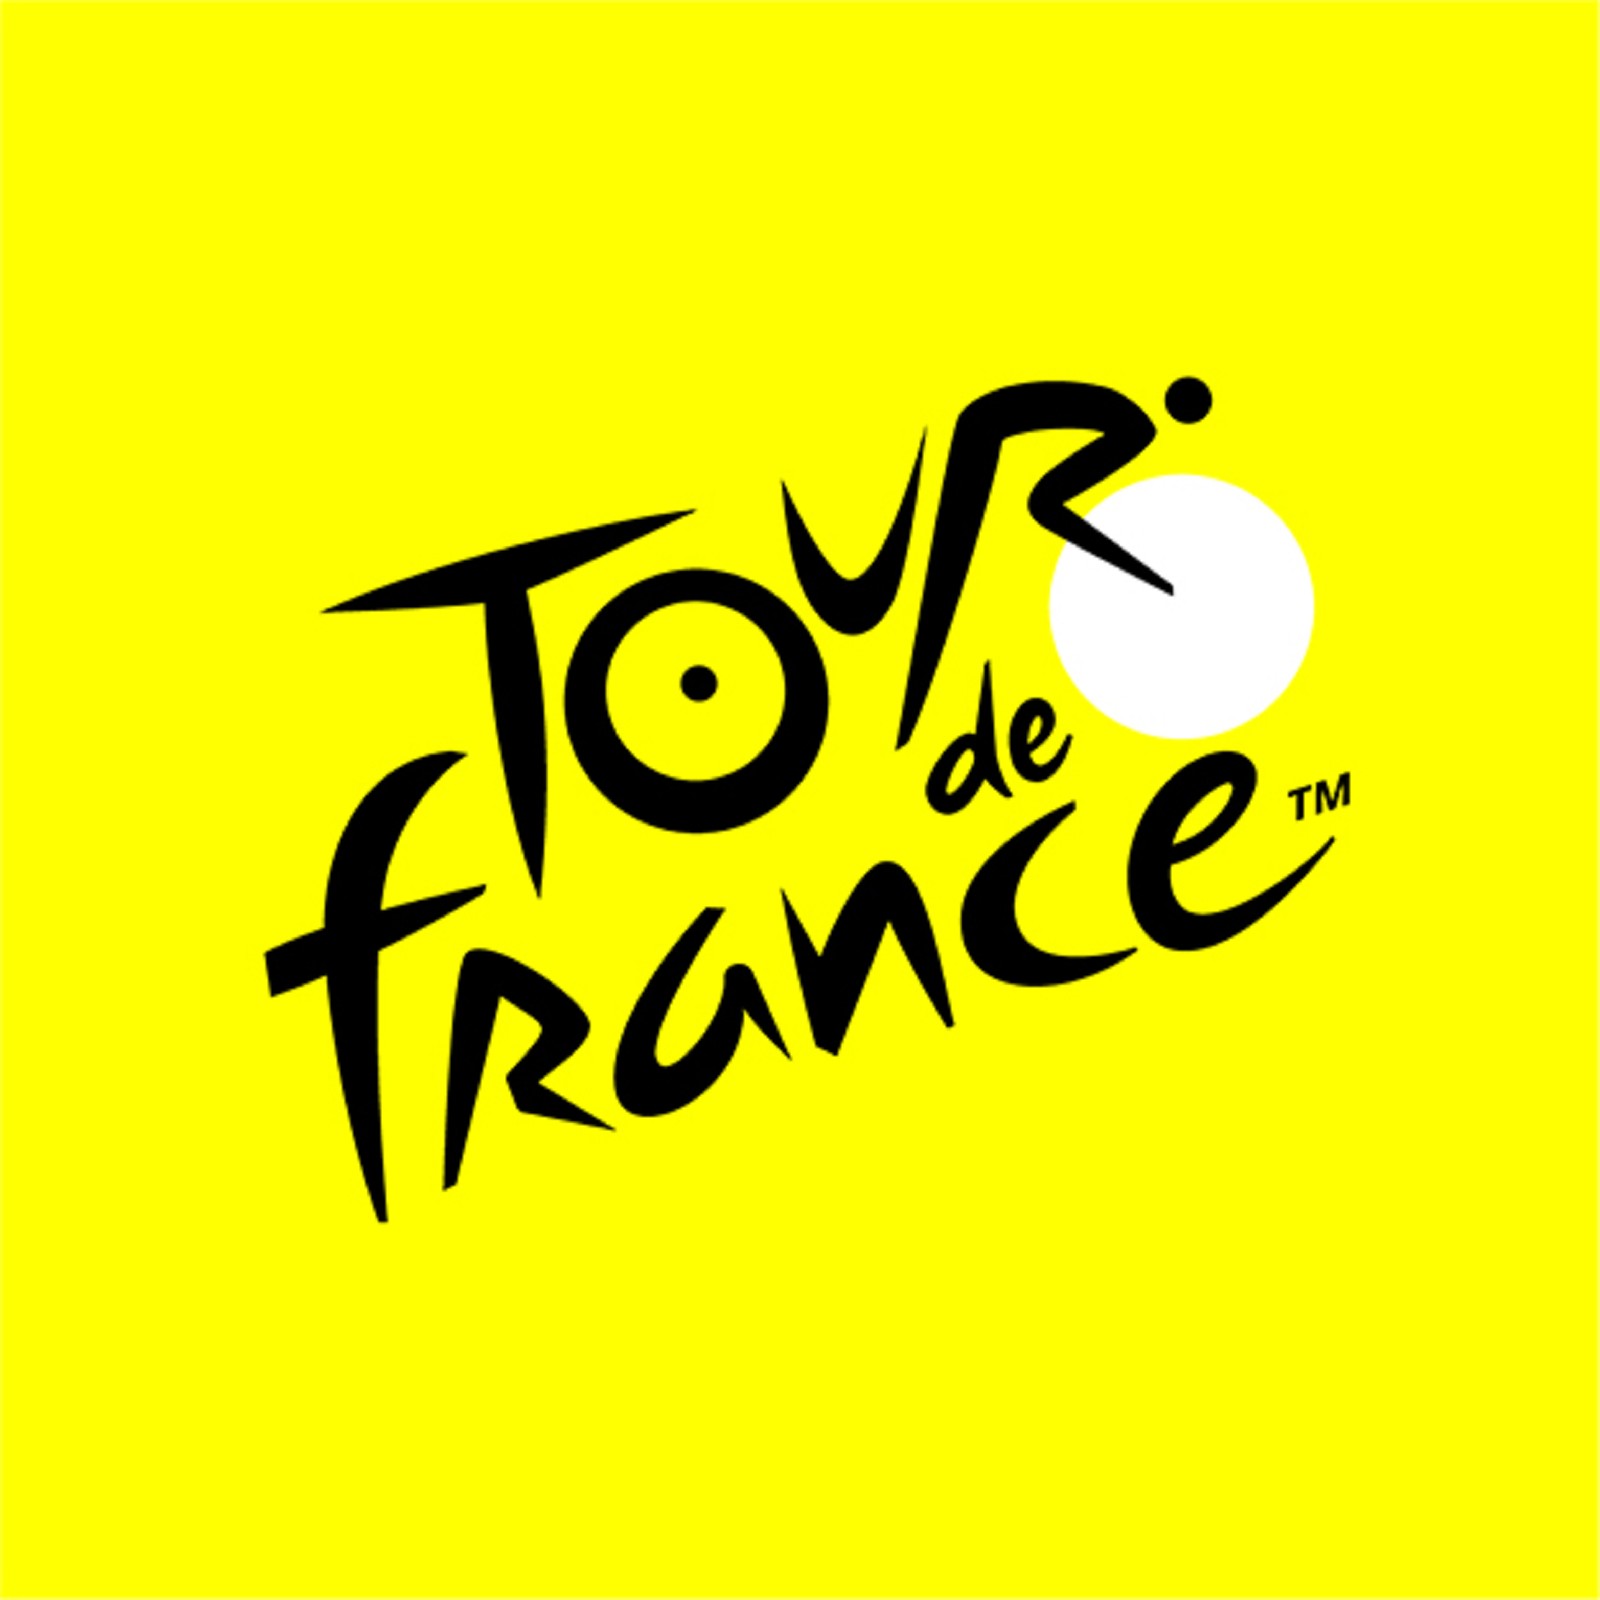 Événement Tour de France 2019